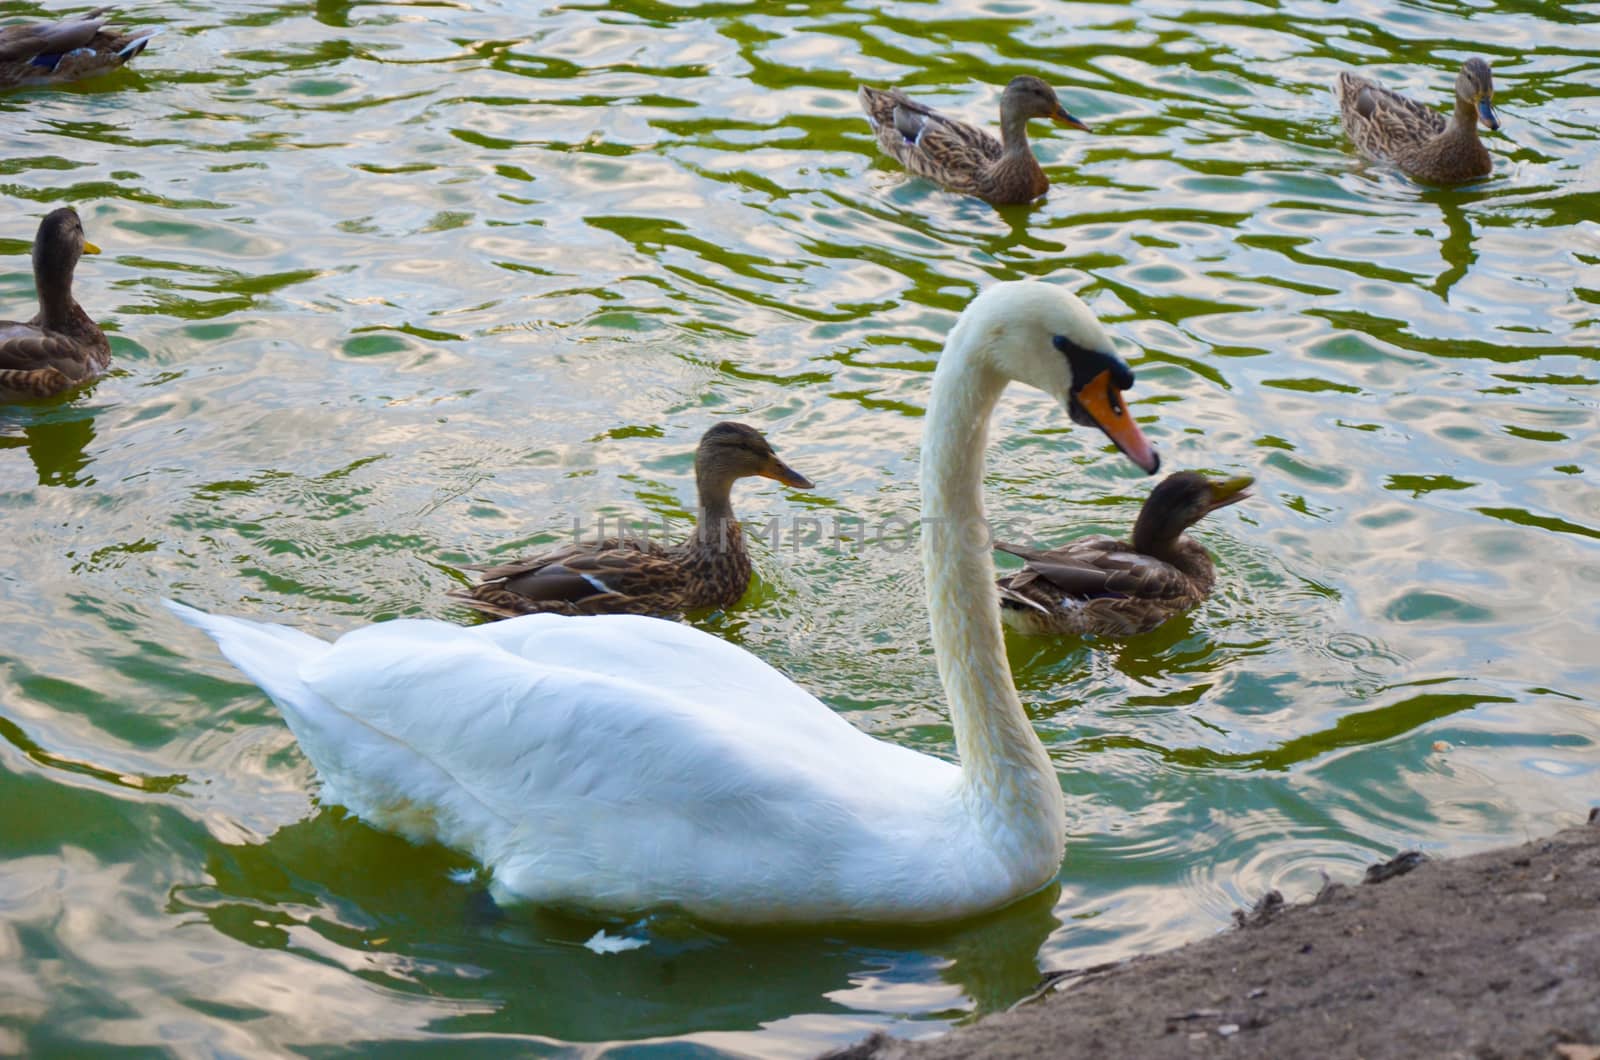 White swan swimming gently in still lake water ingreen light